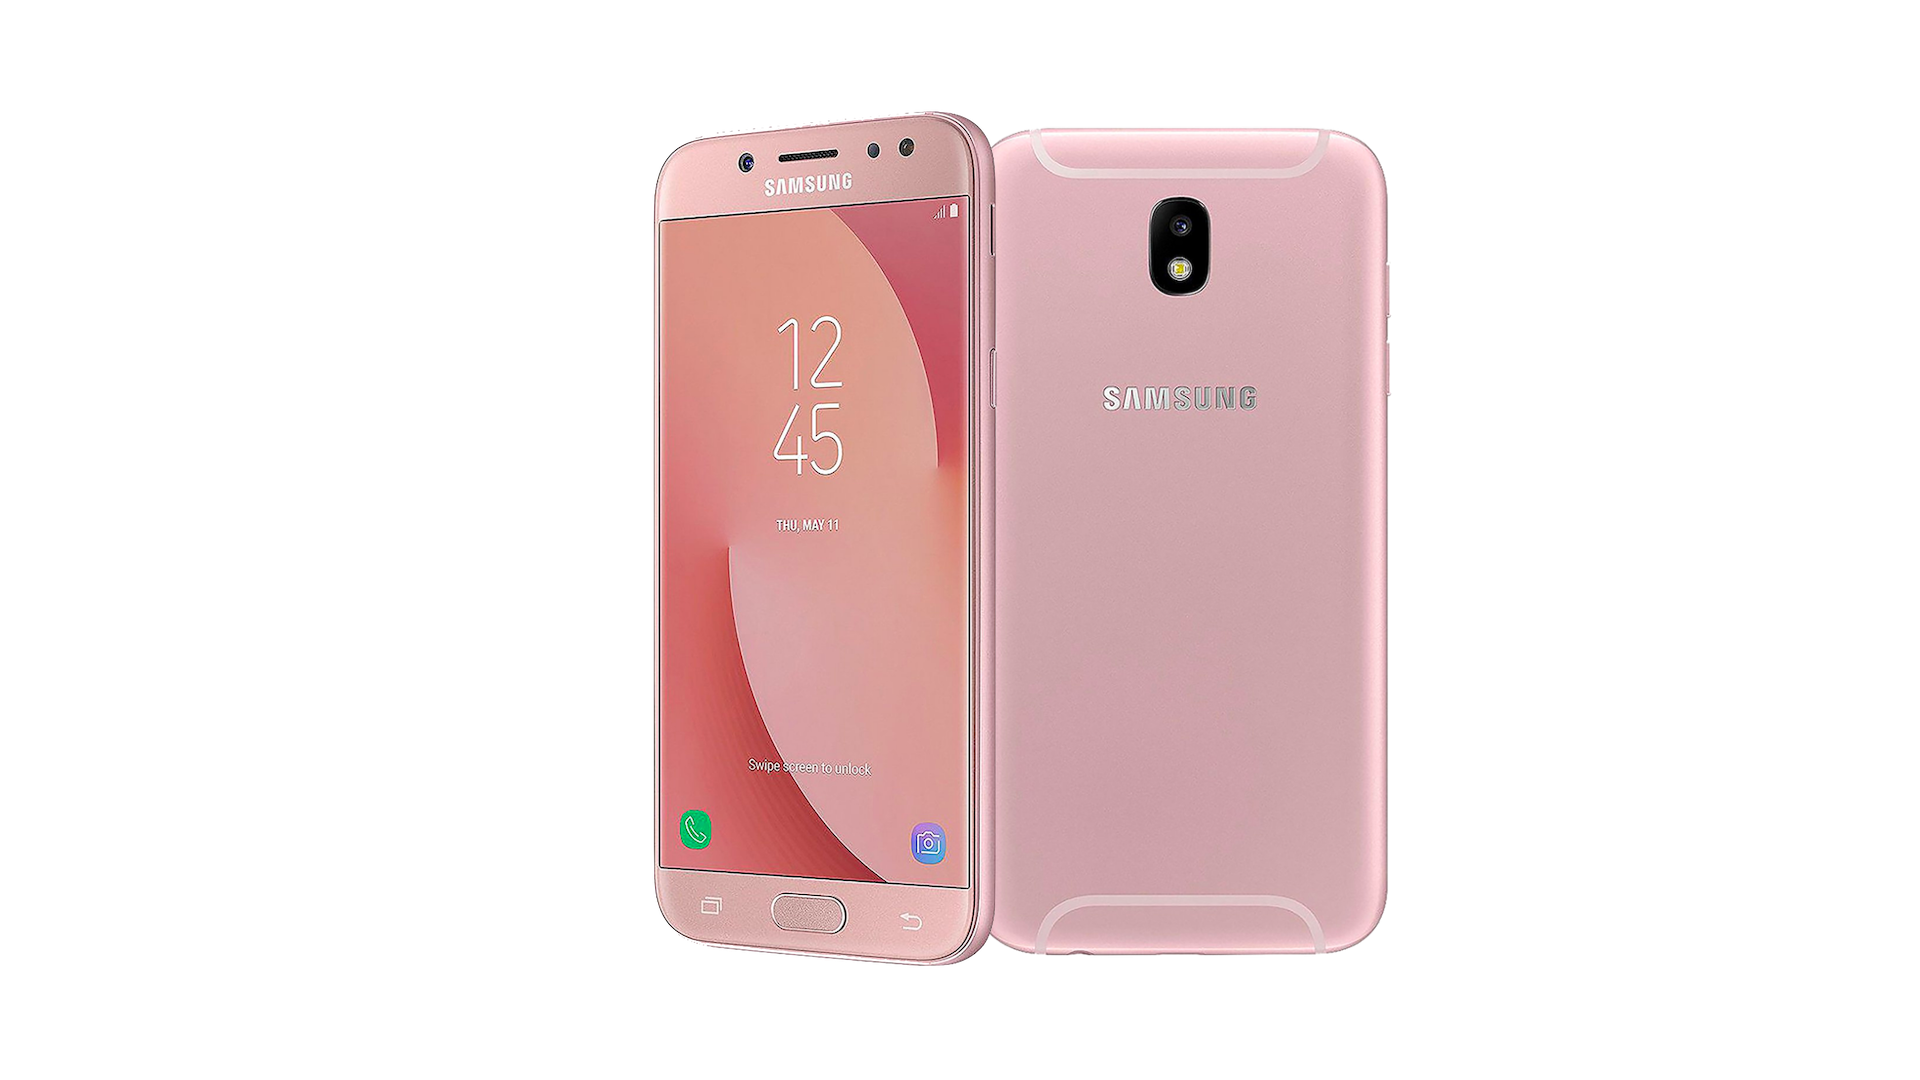 Cùng khám phá bộ sưu tập của Samsung Galaxy J7 Pro và thỏa sức đắm mình trong không gian sống động, rực rỡ trên màn hình điện thoại. Không chỉ vậy, những thiết kế độc đáo và đối xứng của Samsung Galaxy J7 Pro cũng là thứ khiến bạn phải cầm trên tay ngắm nghía mãi.